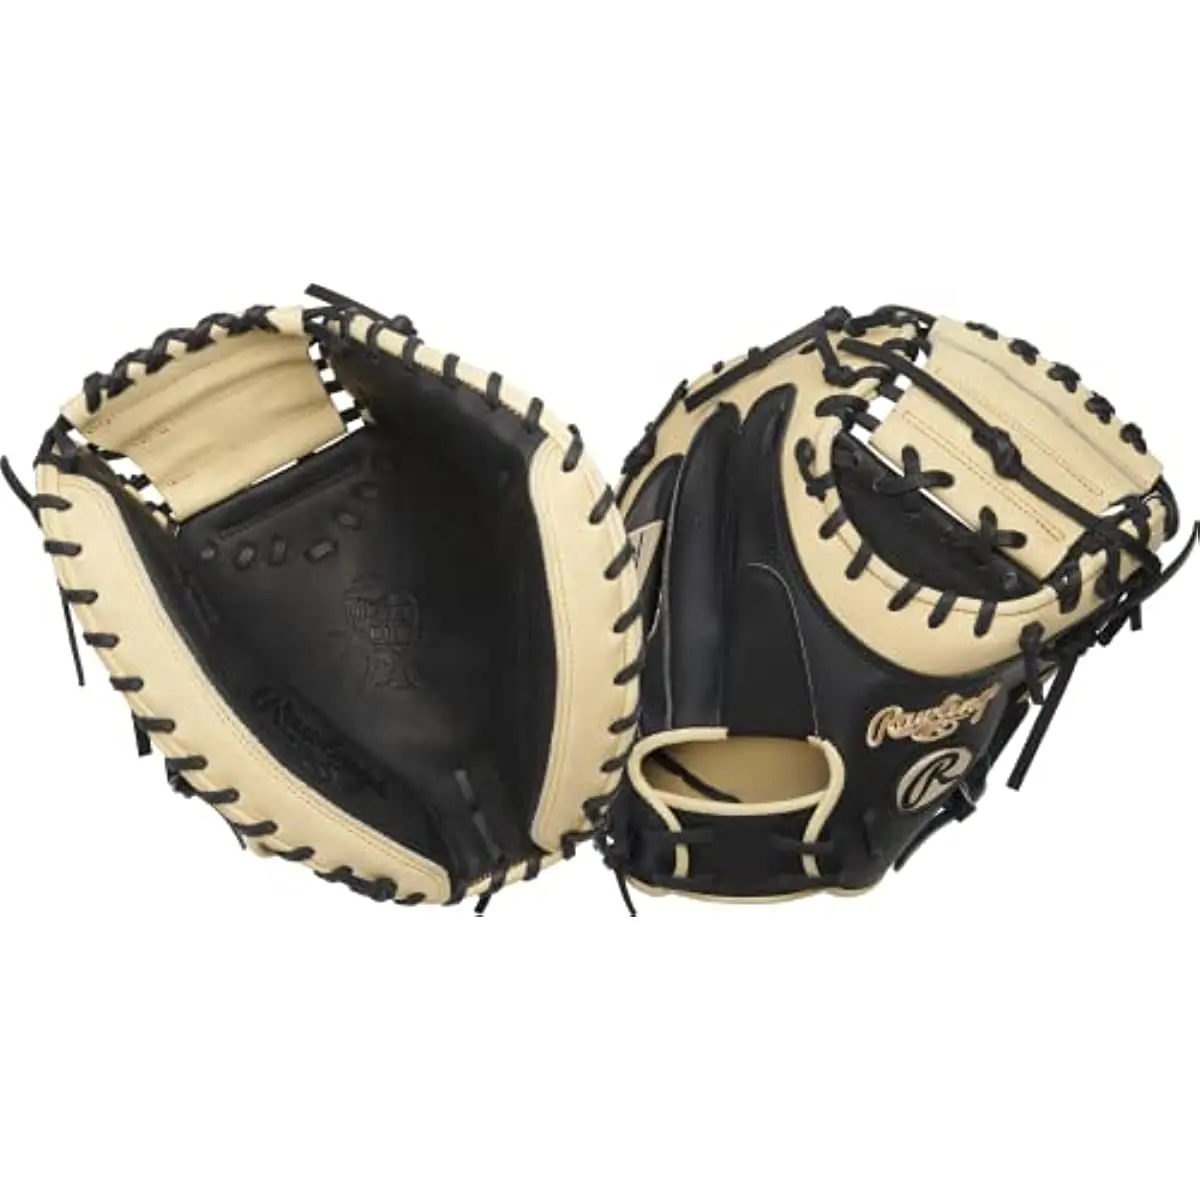 

Бейсбольные перчатки rawling | Бейсбольные перчатки с сердечками | Легкие модели HYPERSHELL и SPEEDSHELL | Несколько стилей